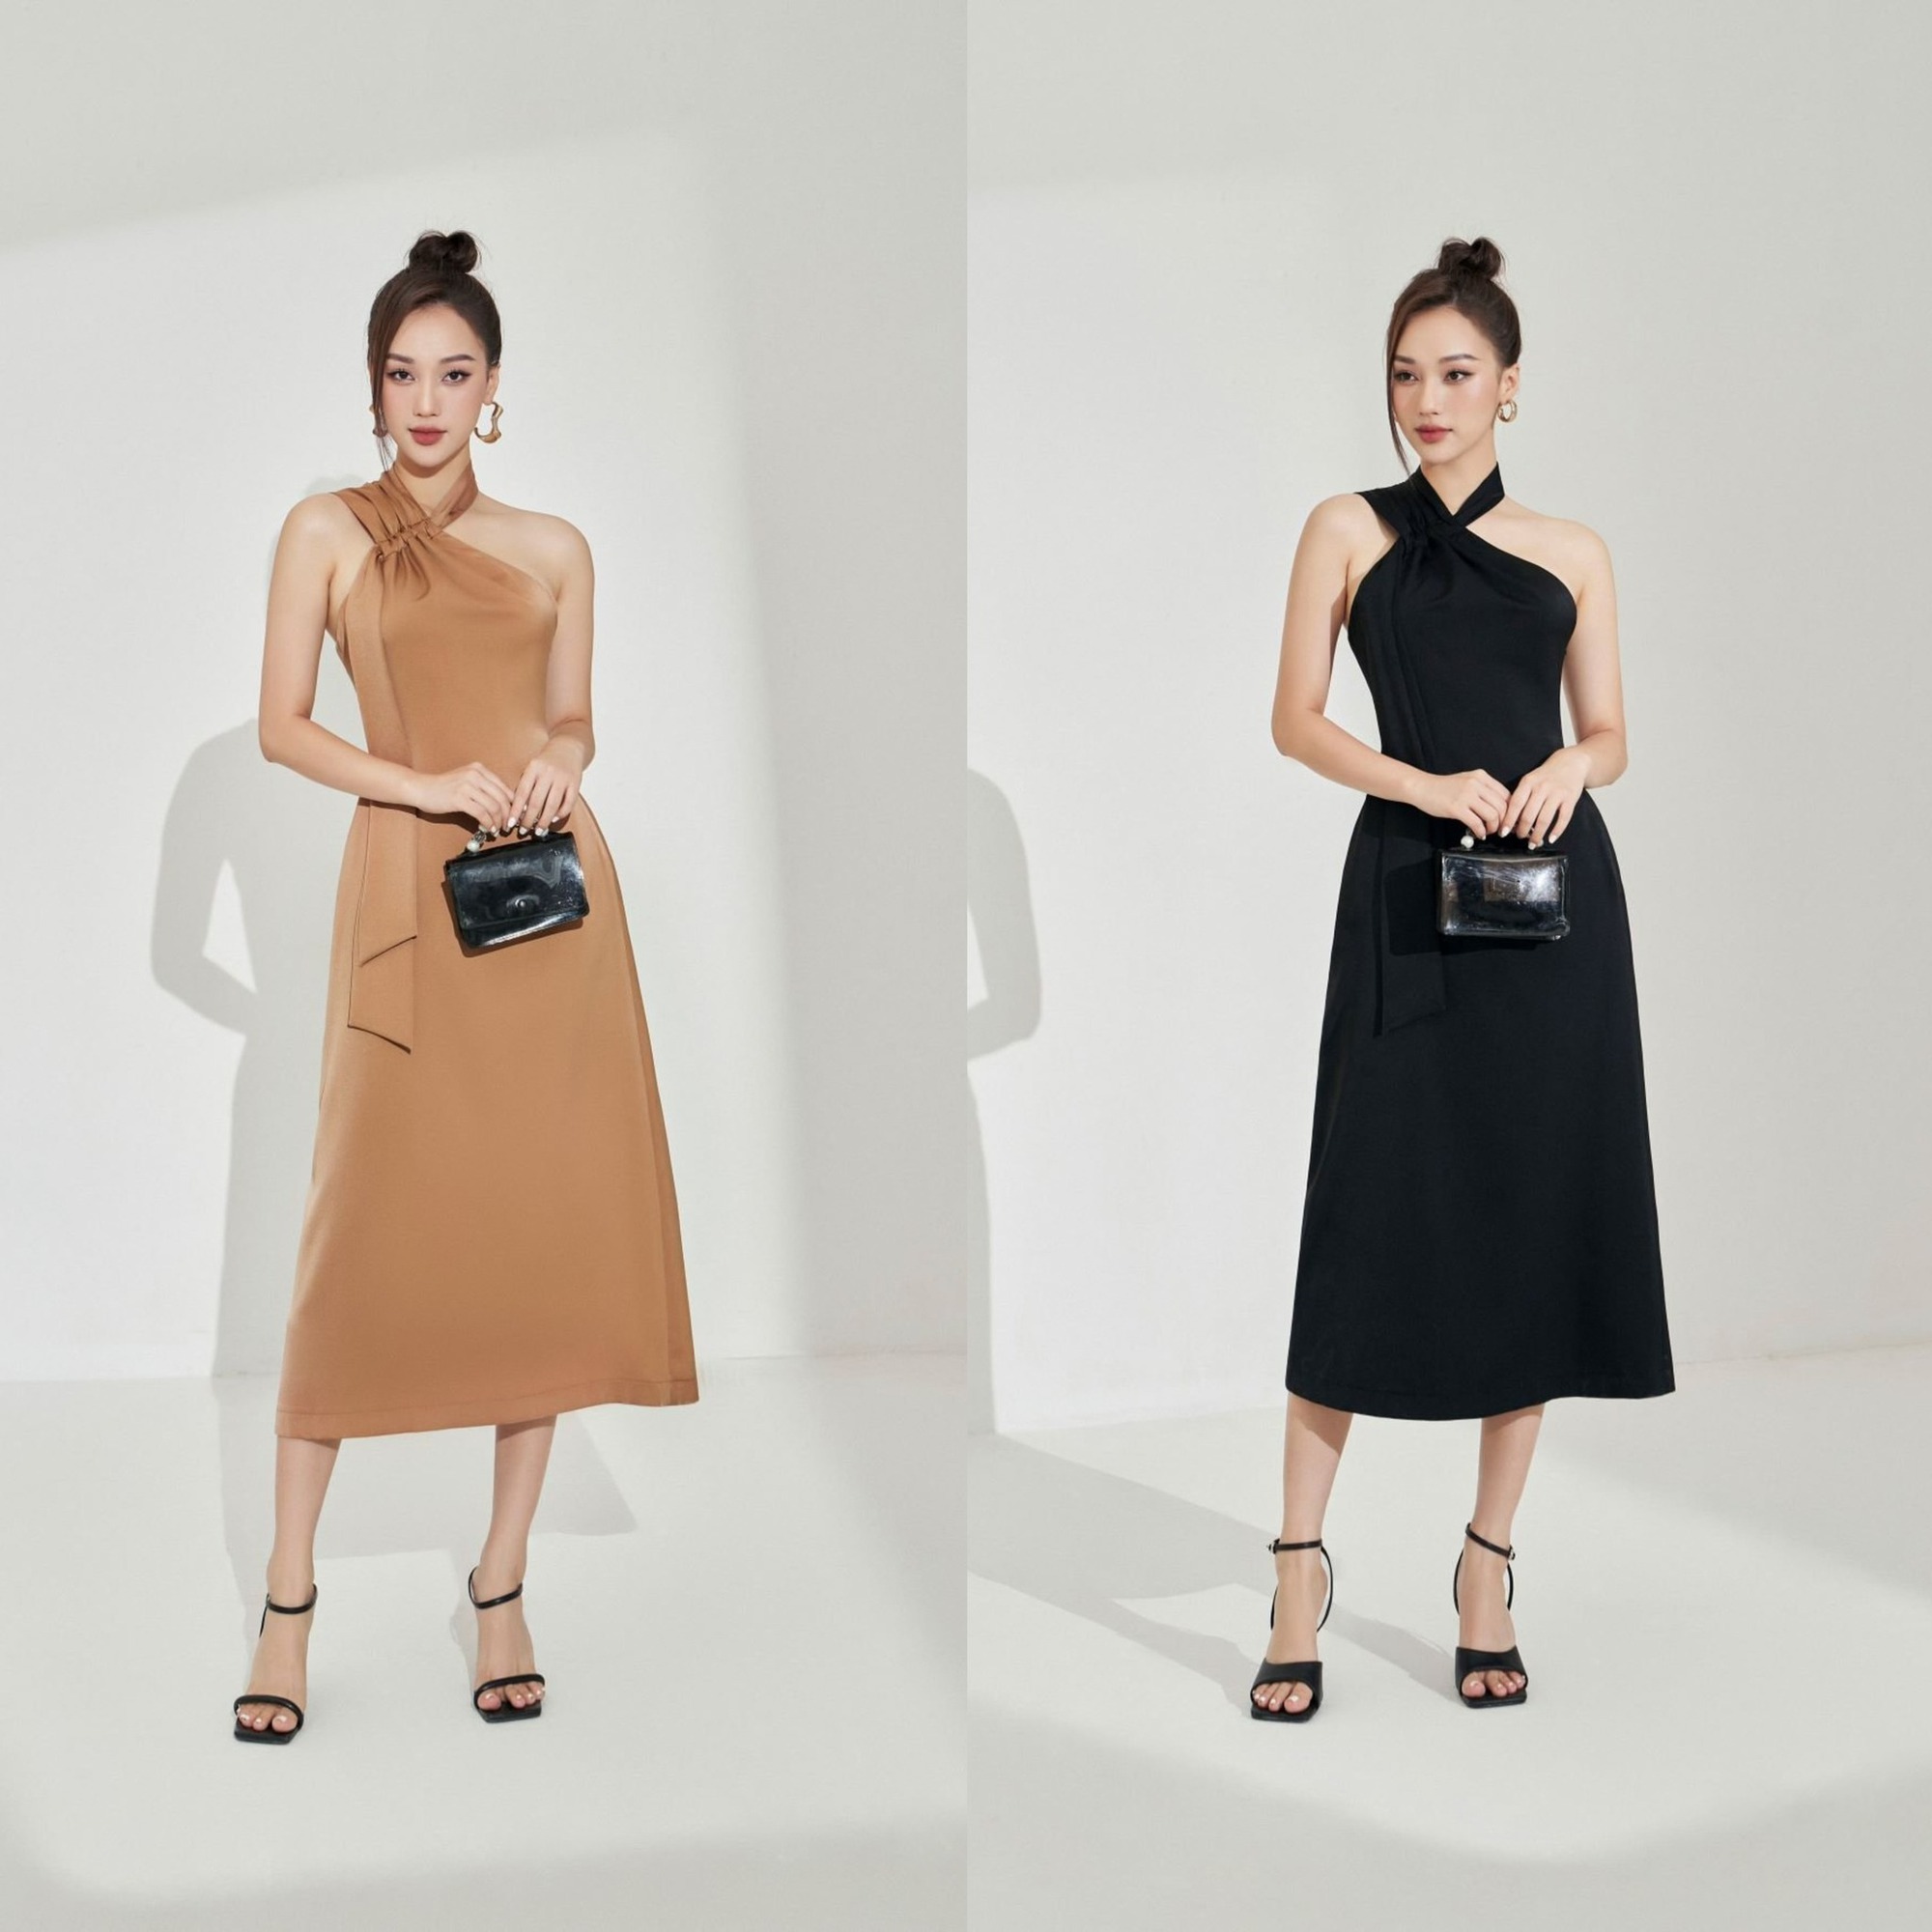 Mua váy cưới giá rẻ đơn giản mà đẹp ở đâu Hà Nội?